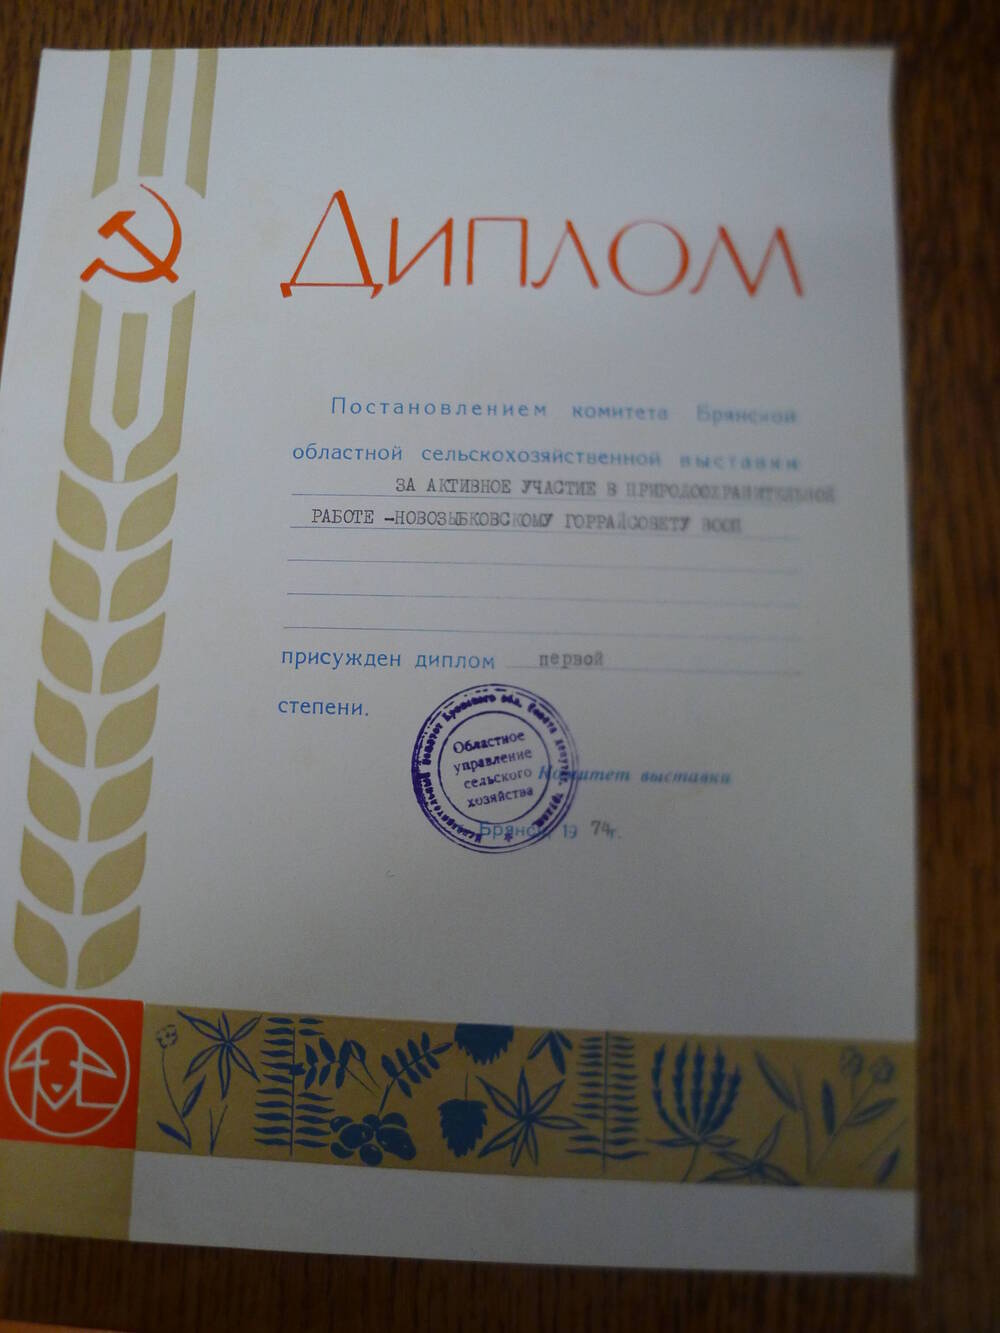 Диплом 1 степени за активное участие в природоохранительной работе. Новозыбковскому горрайсовету ВООП.1974